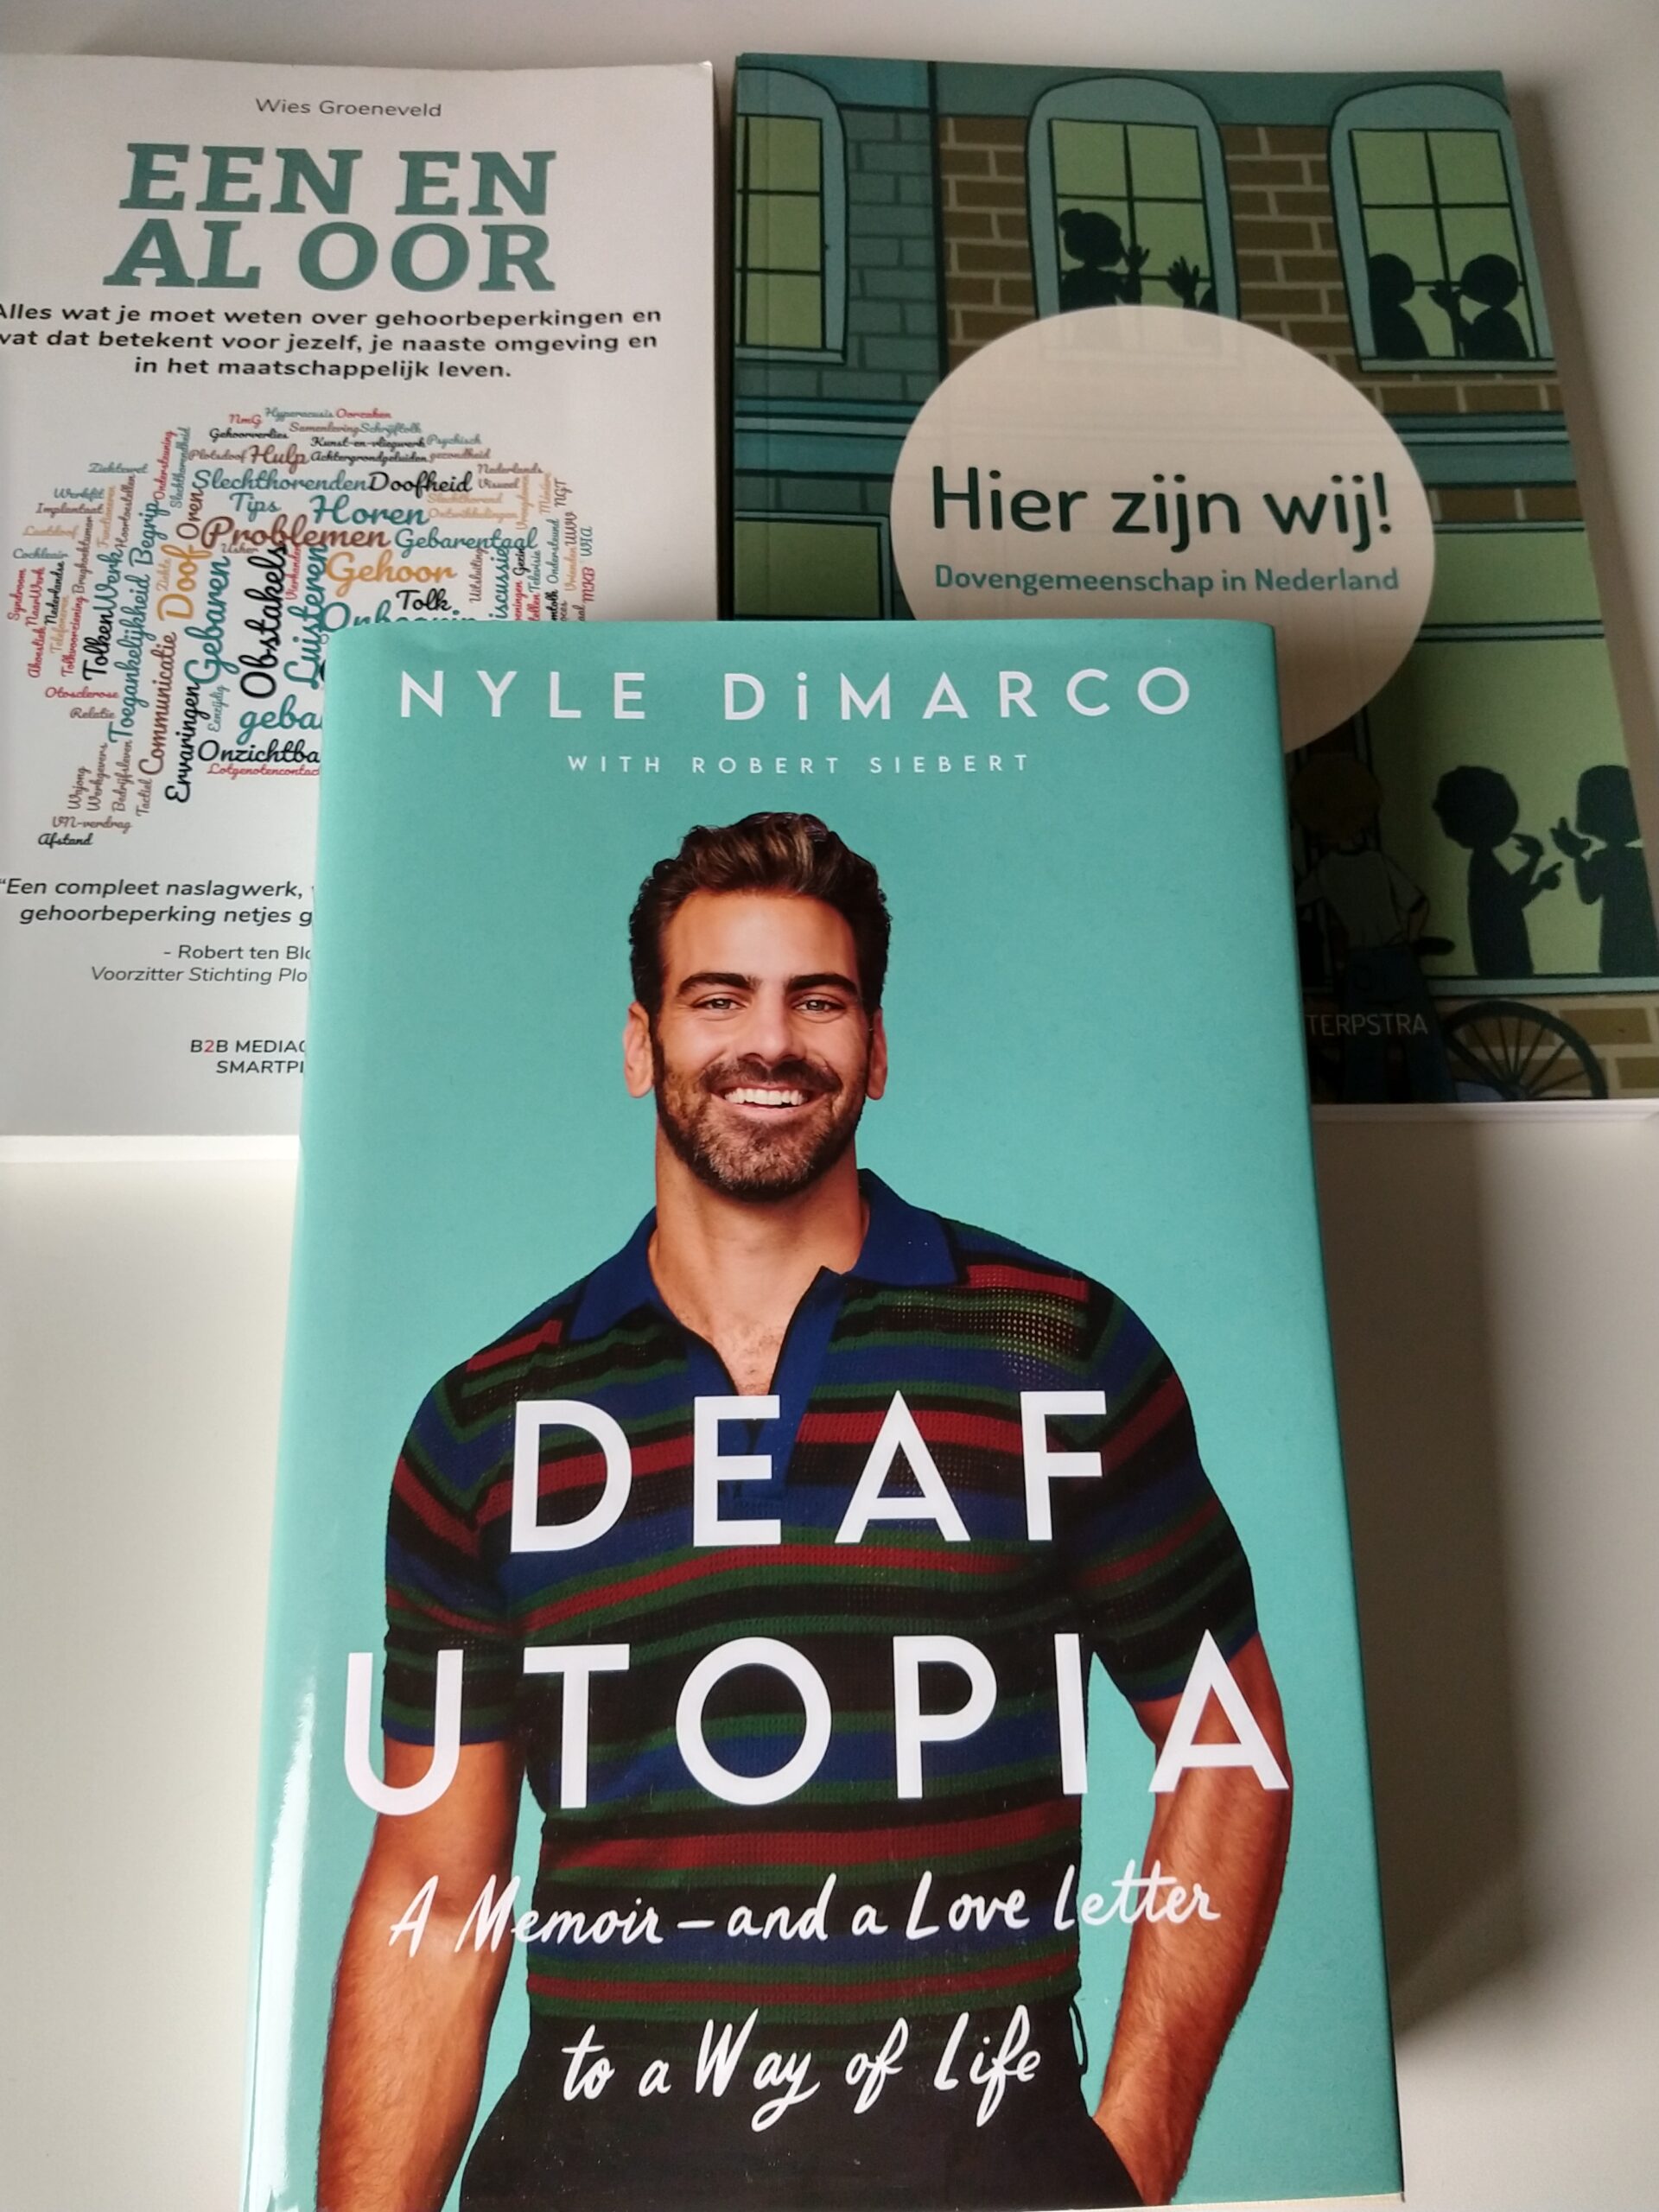 De covers van drie boeken, namelijk: 'Deaf Utopia', 'Een en al oor' en 'Hier zijn wij'